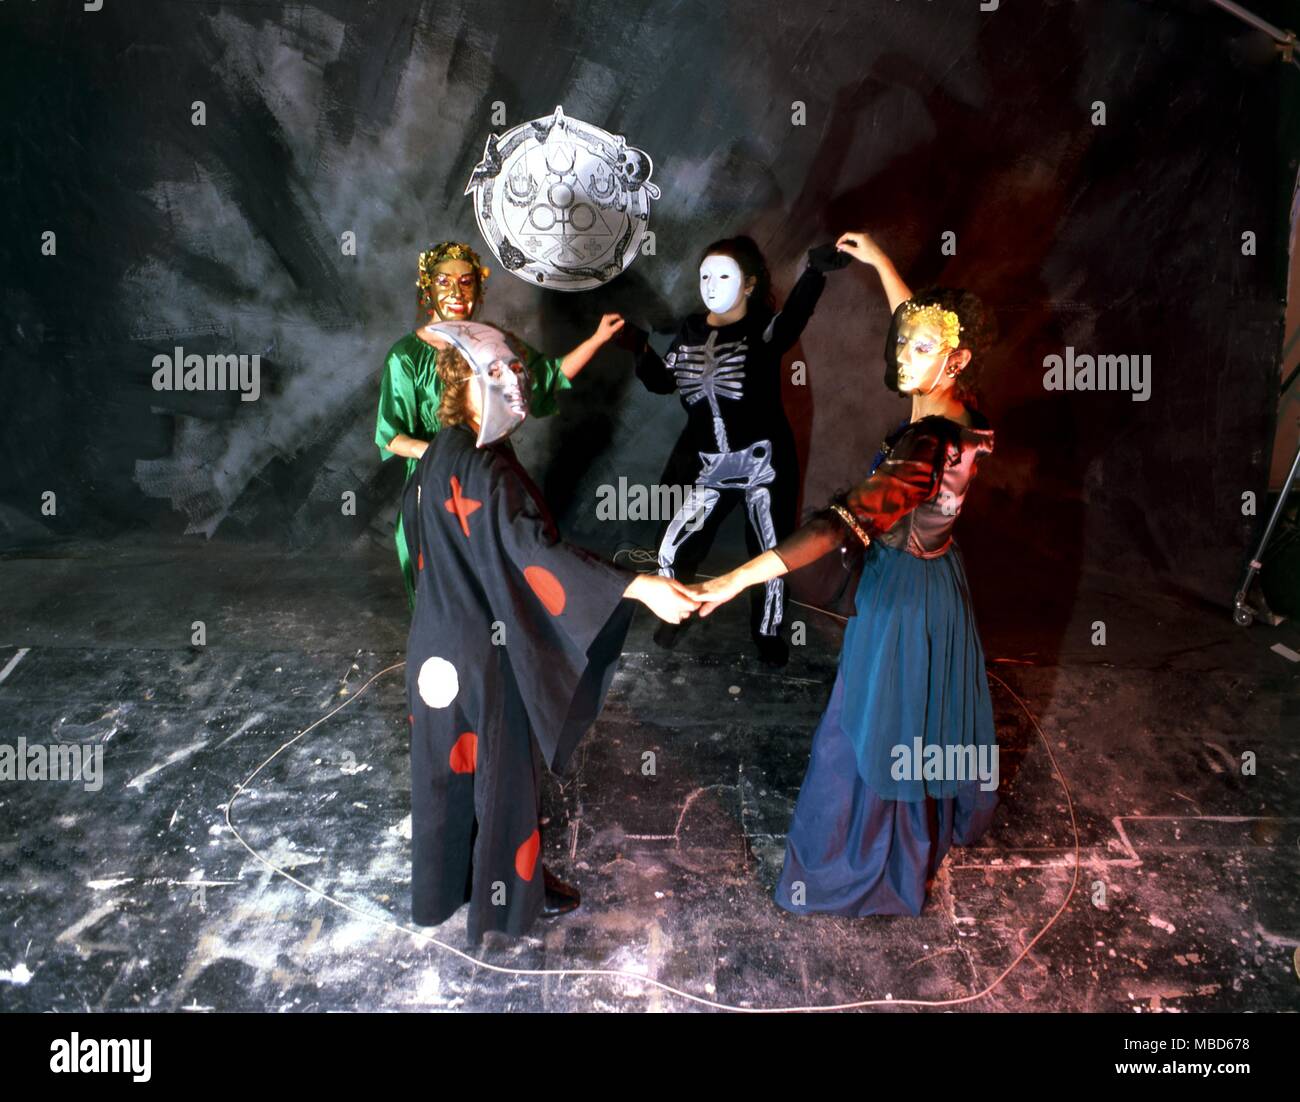 Gruppe von Menschen, die in einer schwarz-Magie/Hexerei burleske, ausgefallene Kostüme und Masken, Tanzen in einem magischen Kreis. - ©/Charles Walker Stockfoto